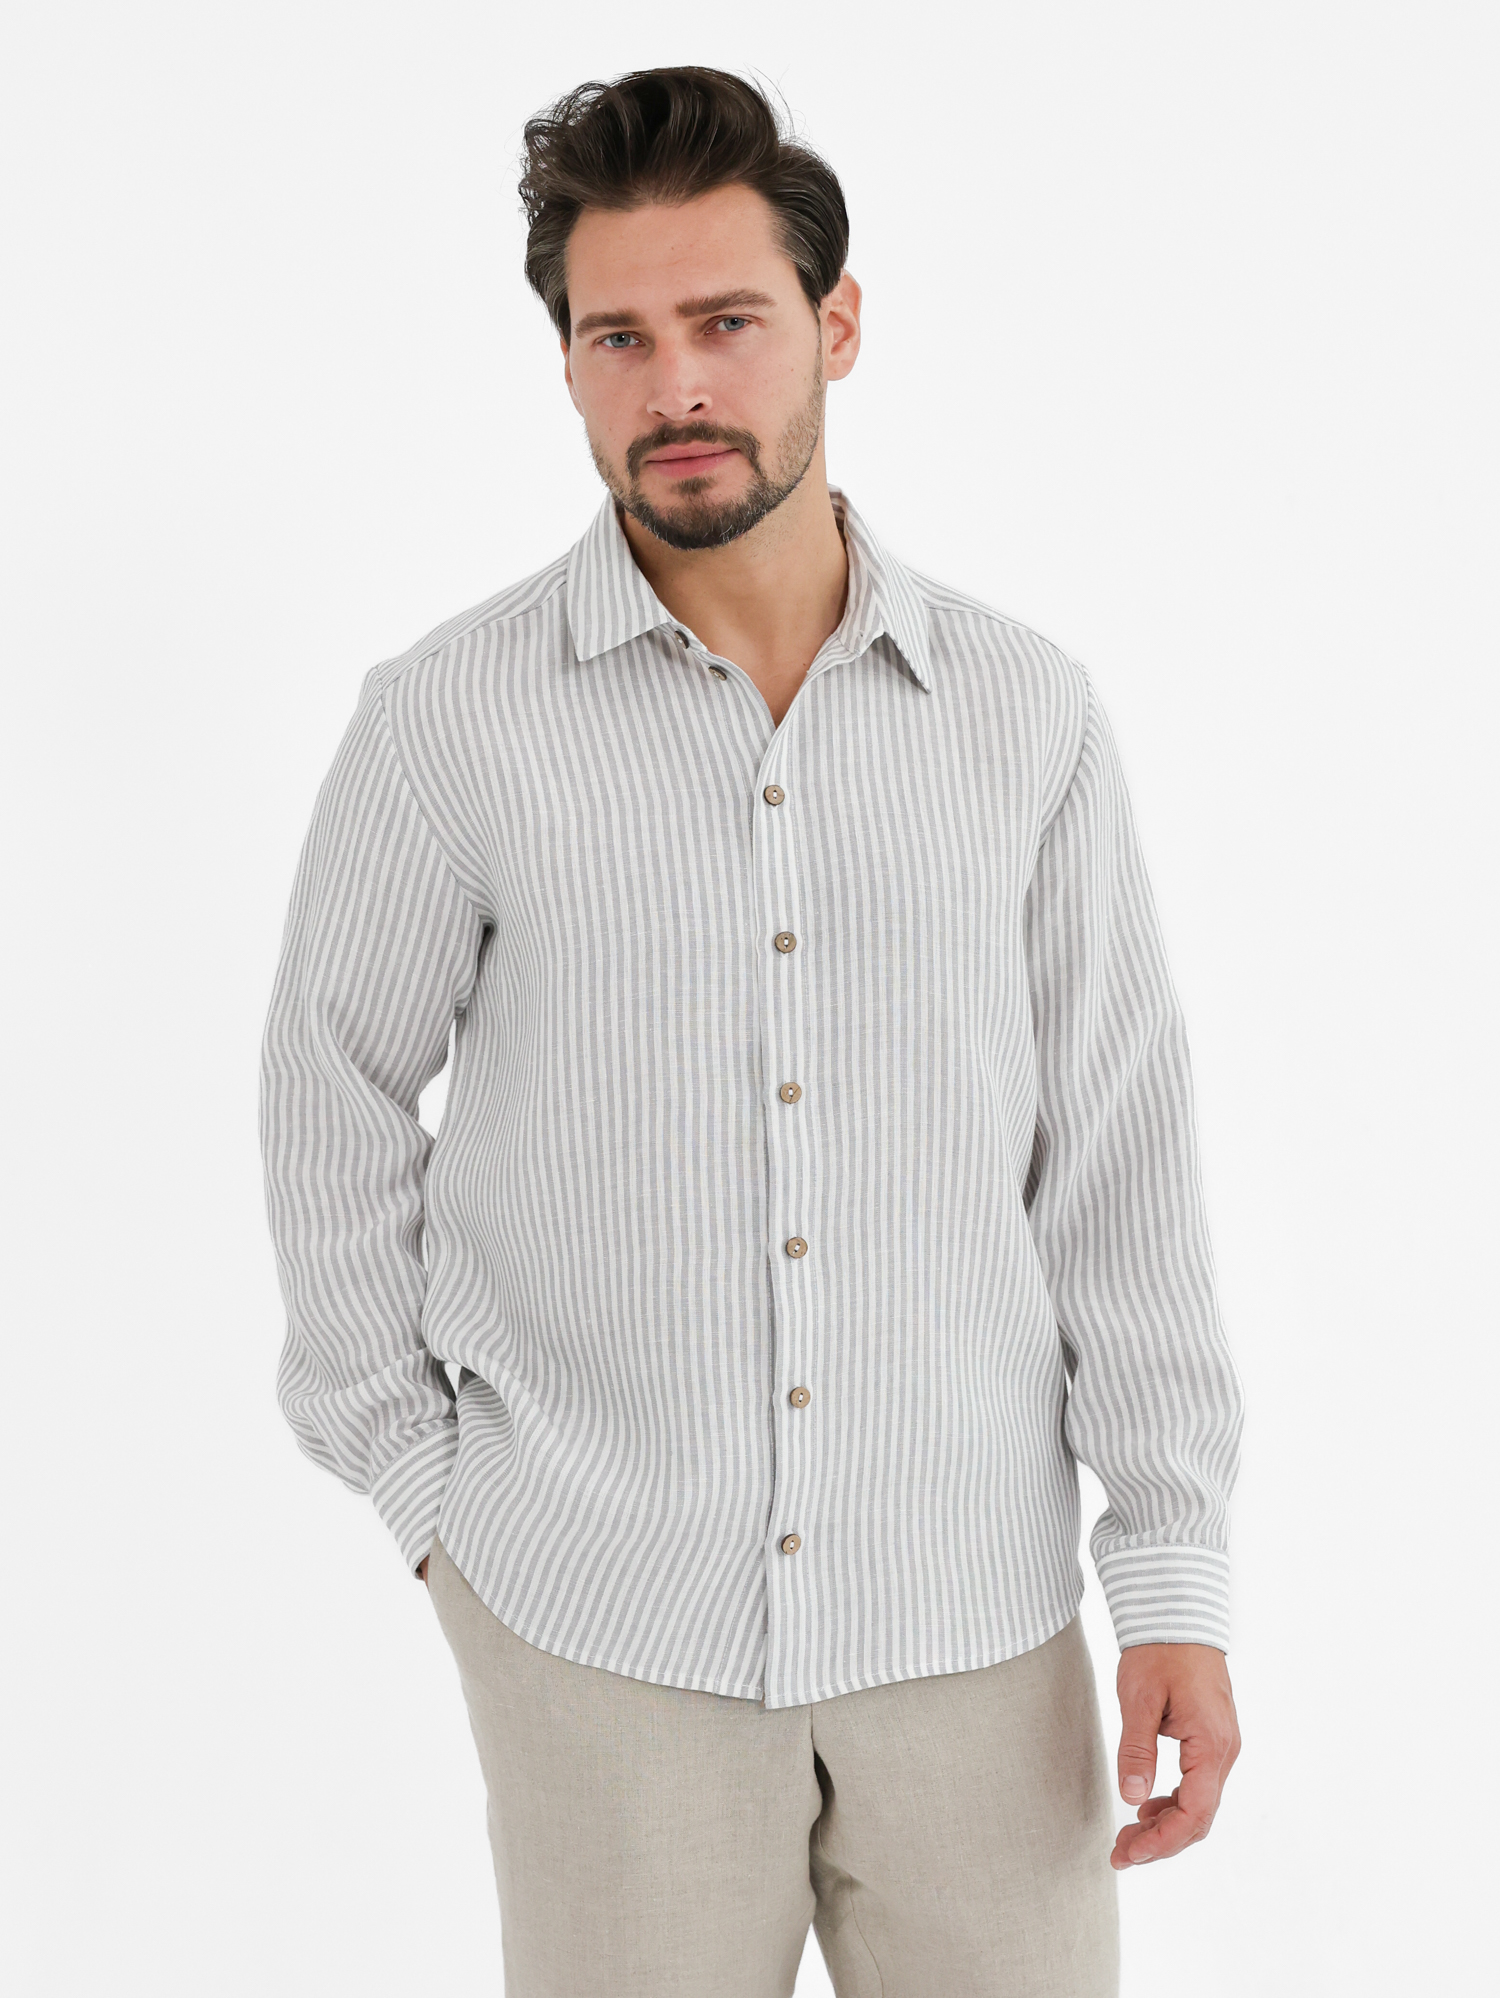 Men's striped linen shirt